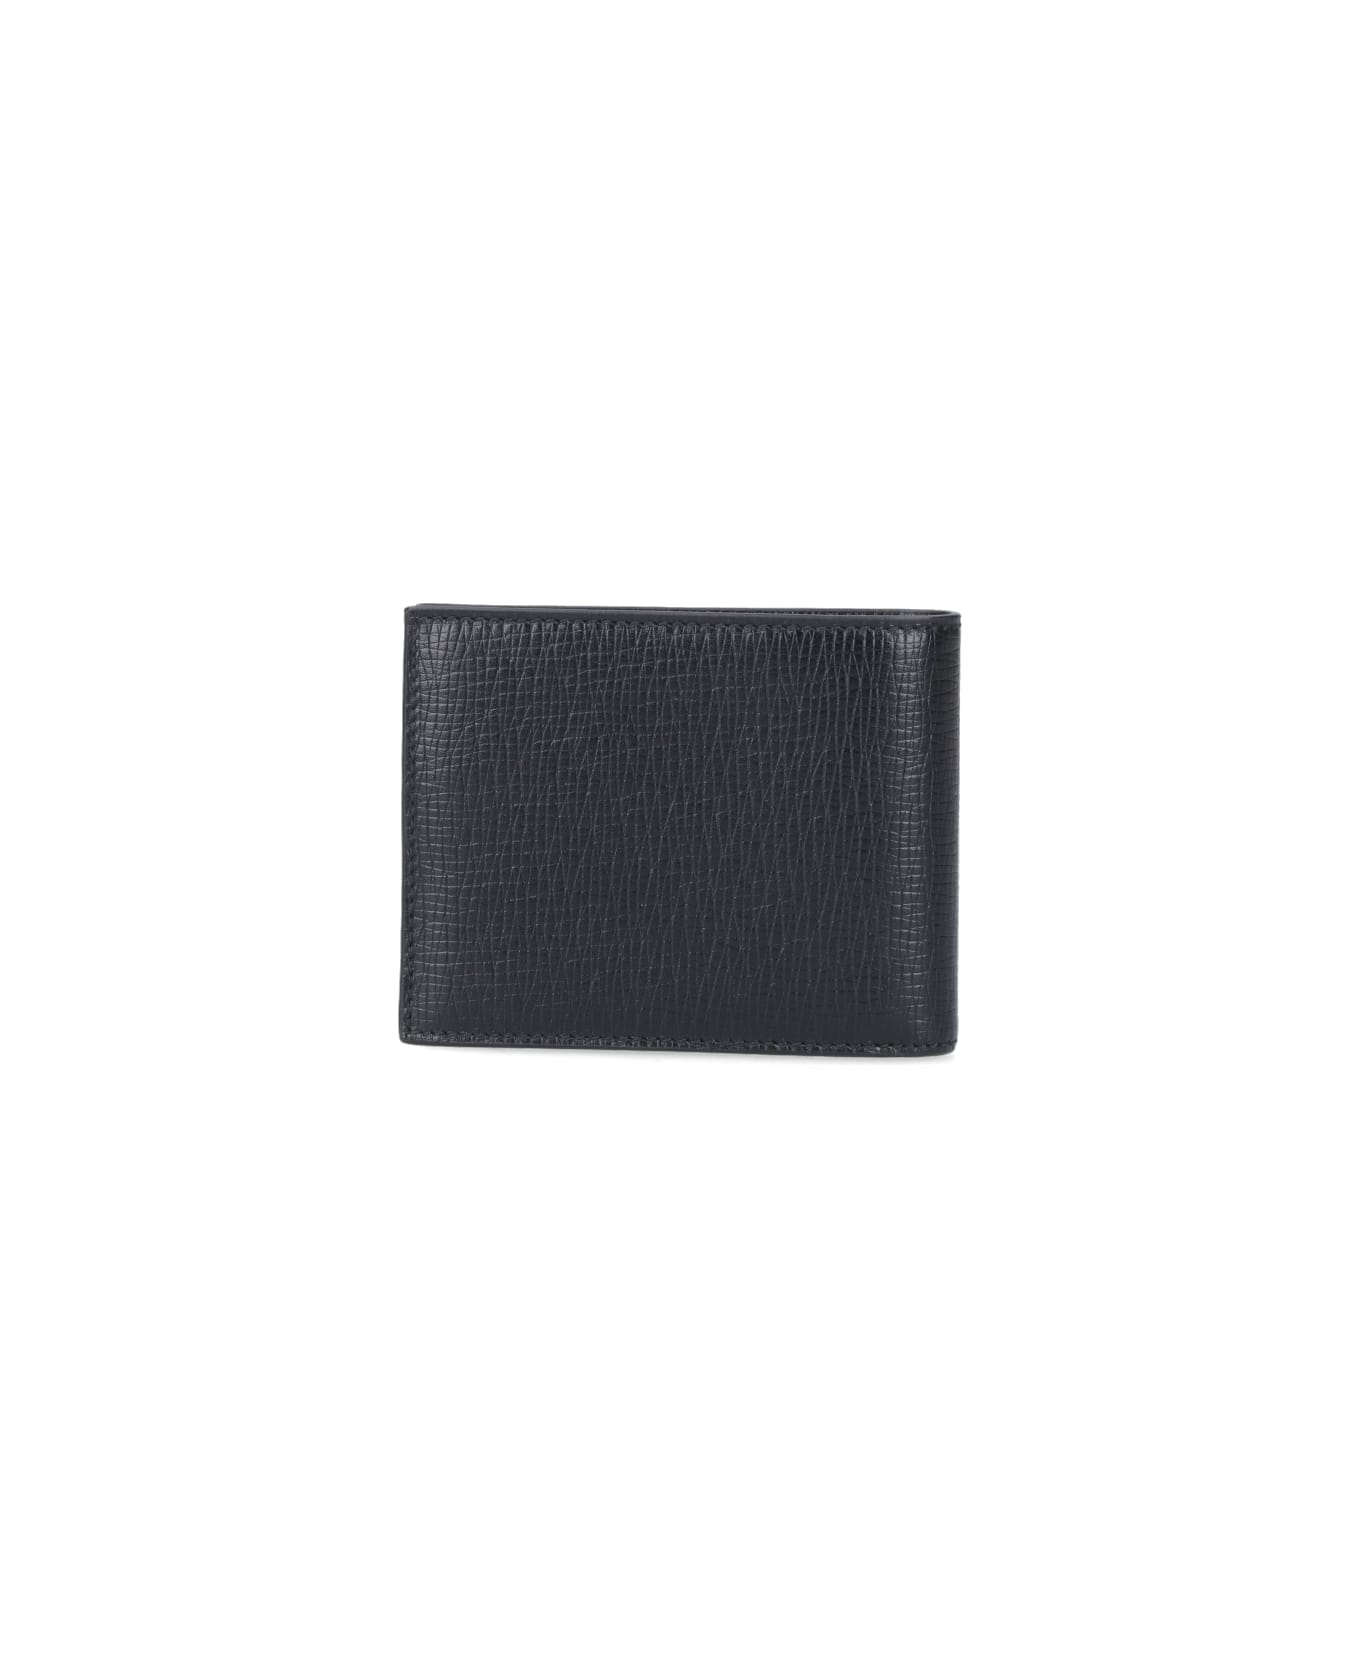 Ferragamo Bi-fold Wallets - Black  